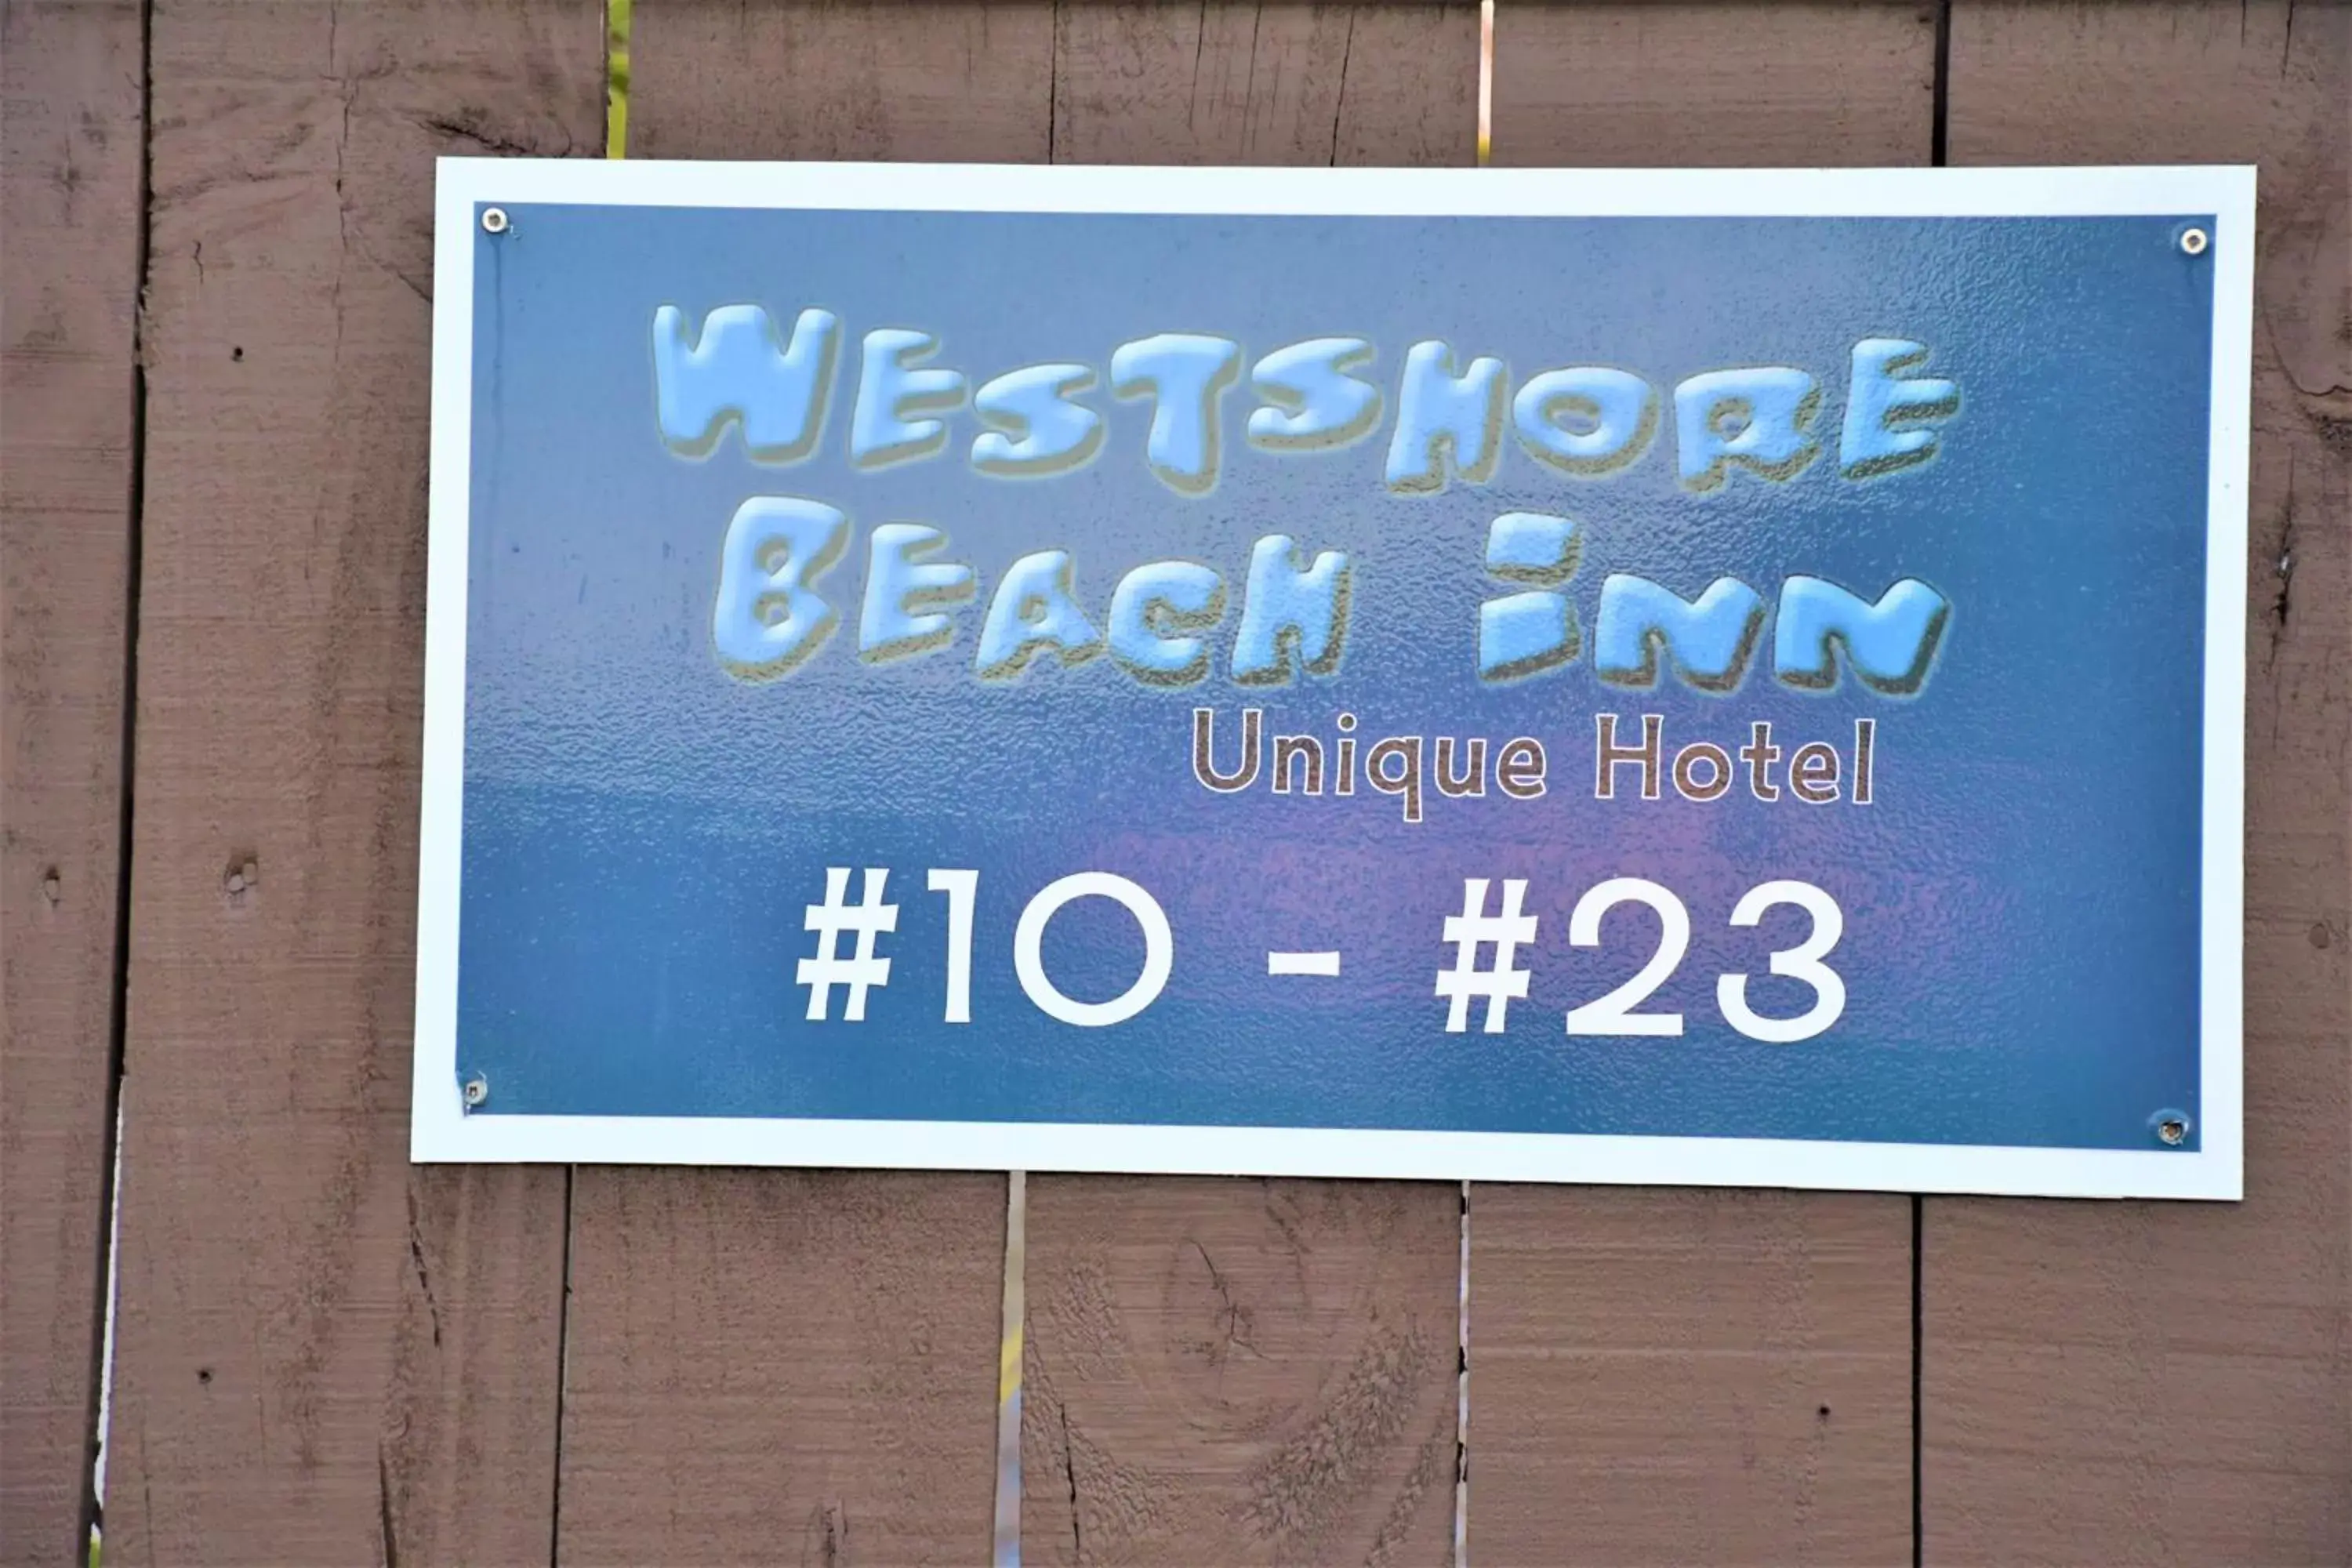 Comfort Inn Westshore Beach